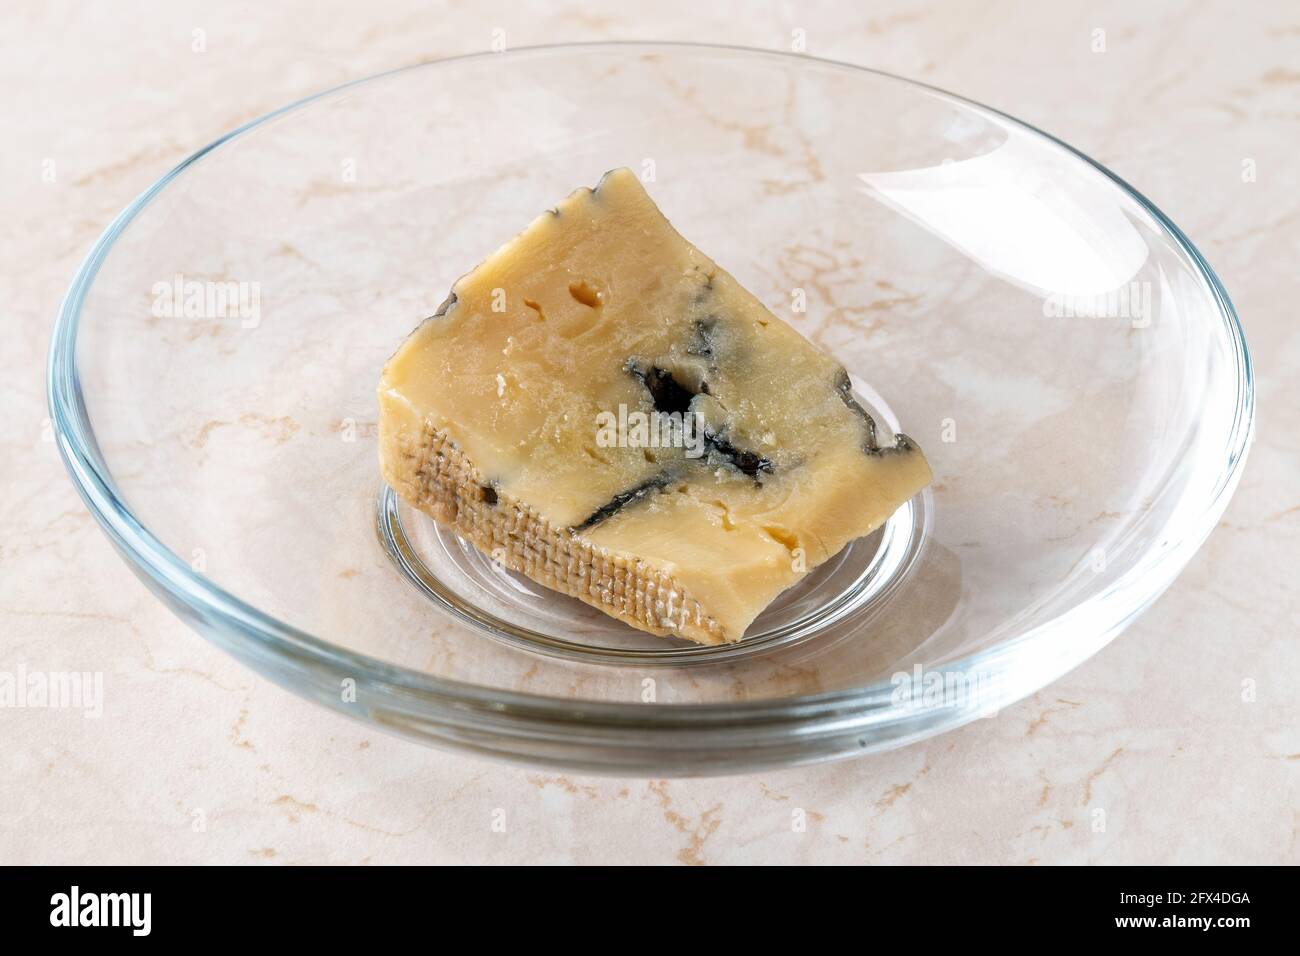 Rottami di formaggio essiccato rovinato. Un piccolo pezzo di formaggio blu dor si è asciugato su un piatto sul tavolo. Cibo viziato a causa di stoccaggio fuori dal frigorifero. Foto Stock